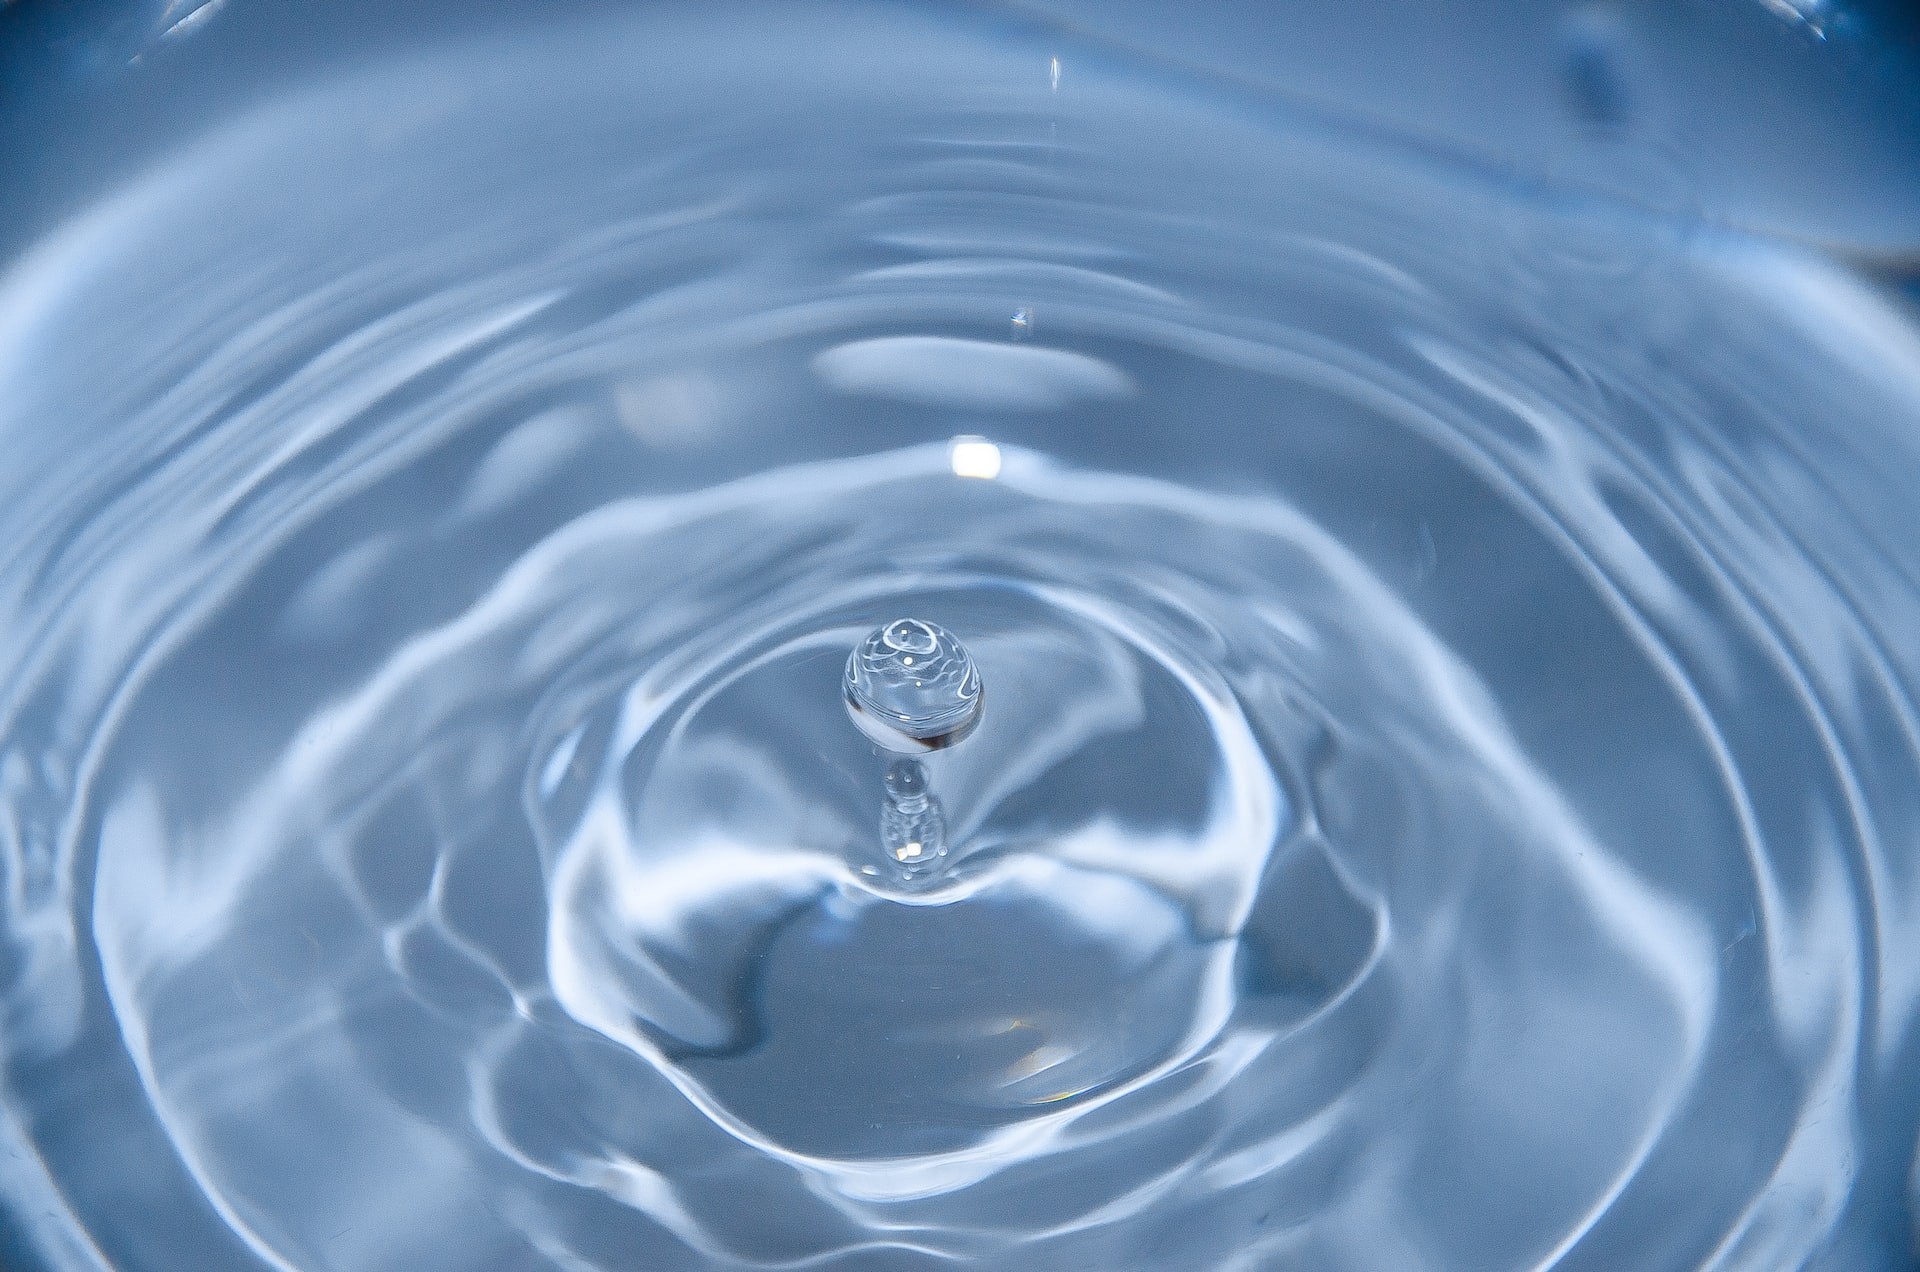 Novas evidências sugerem que água tem 2 fases líquidas diferentes sob baixas temperaturas (Foto: David Becker/ Unsplash)